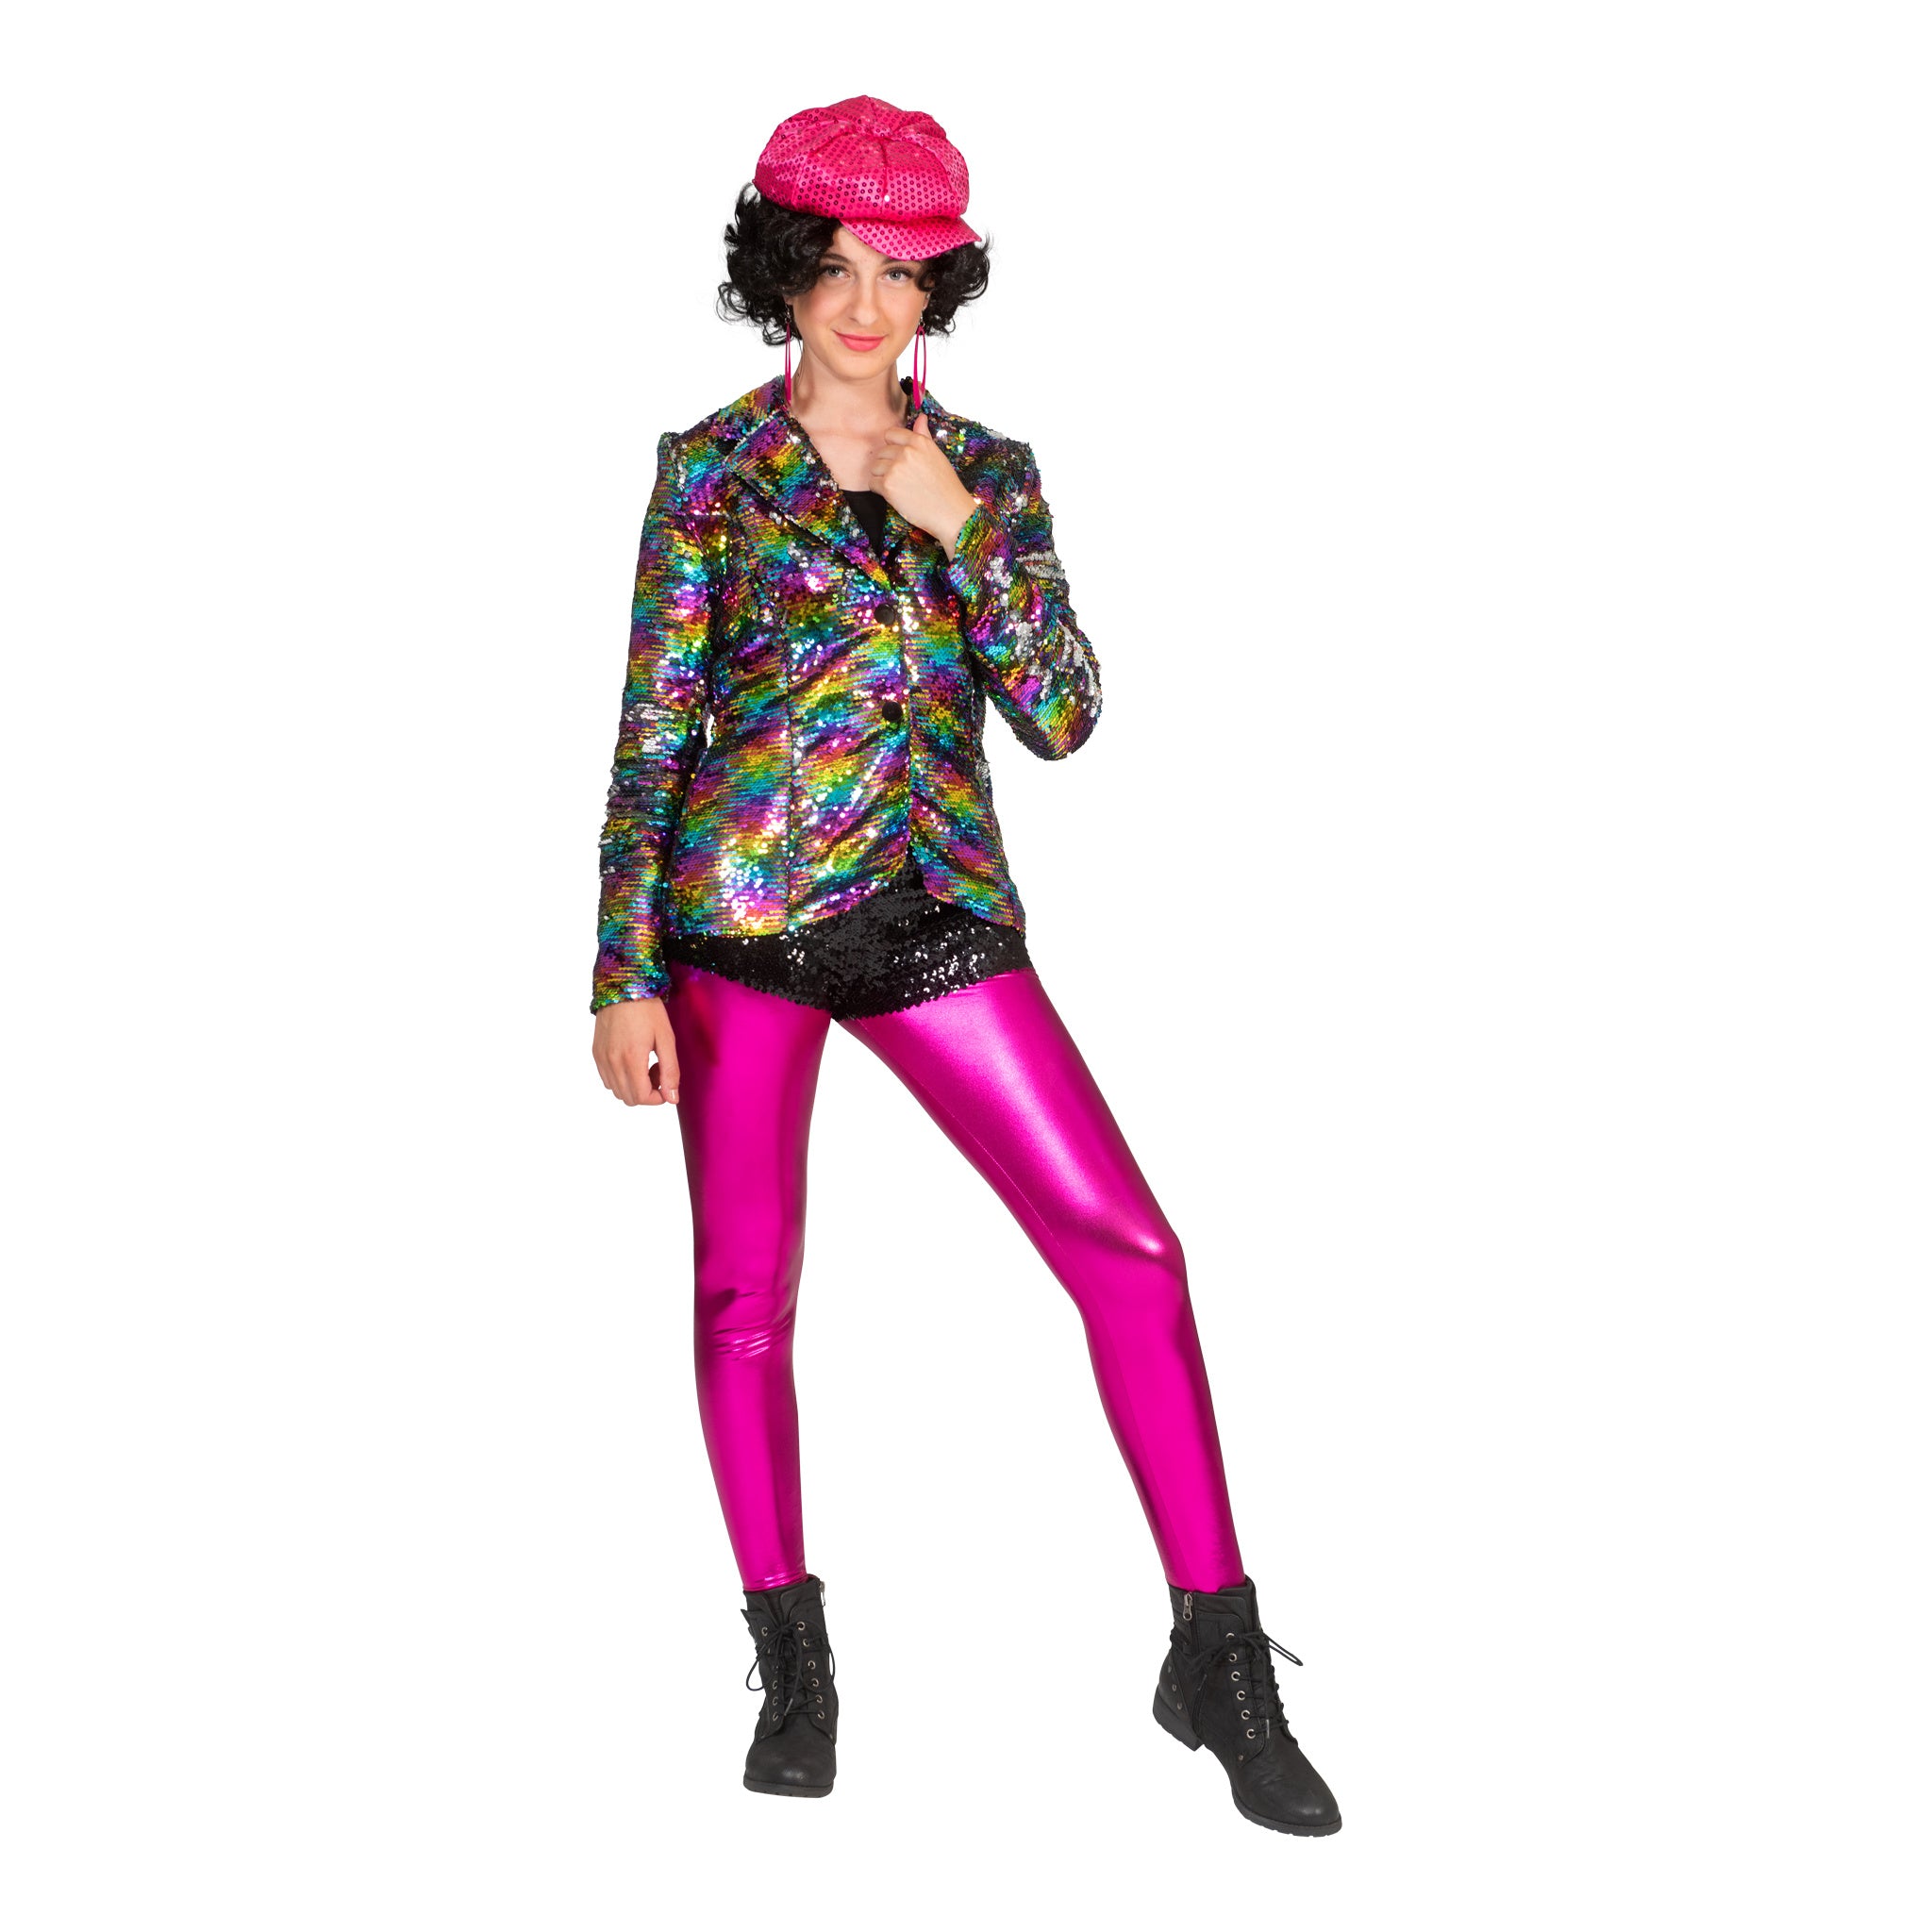 Leuke disco jas Amber in regenboog kleuren met glitters